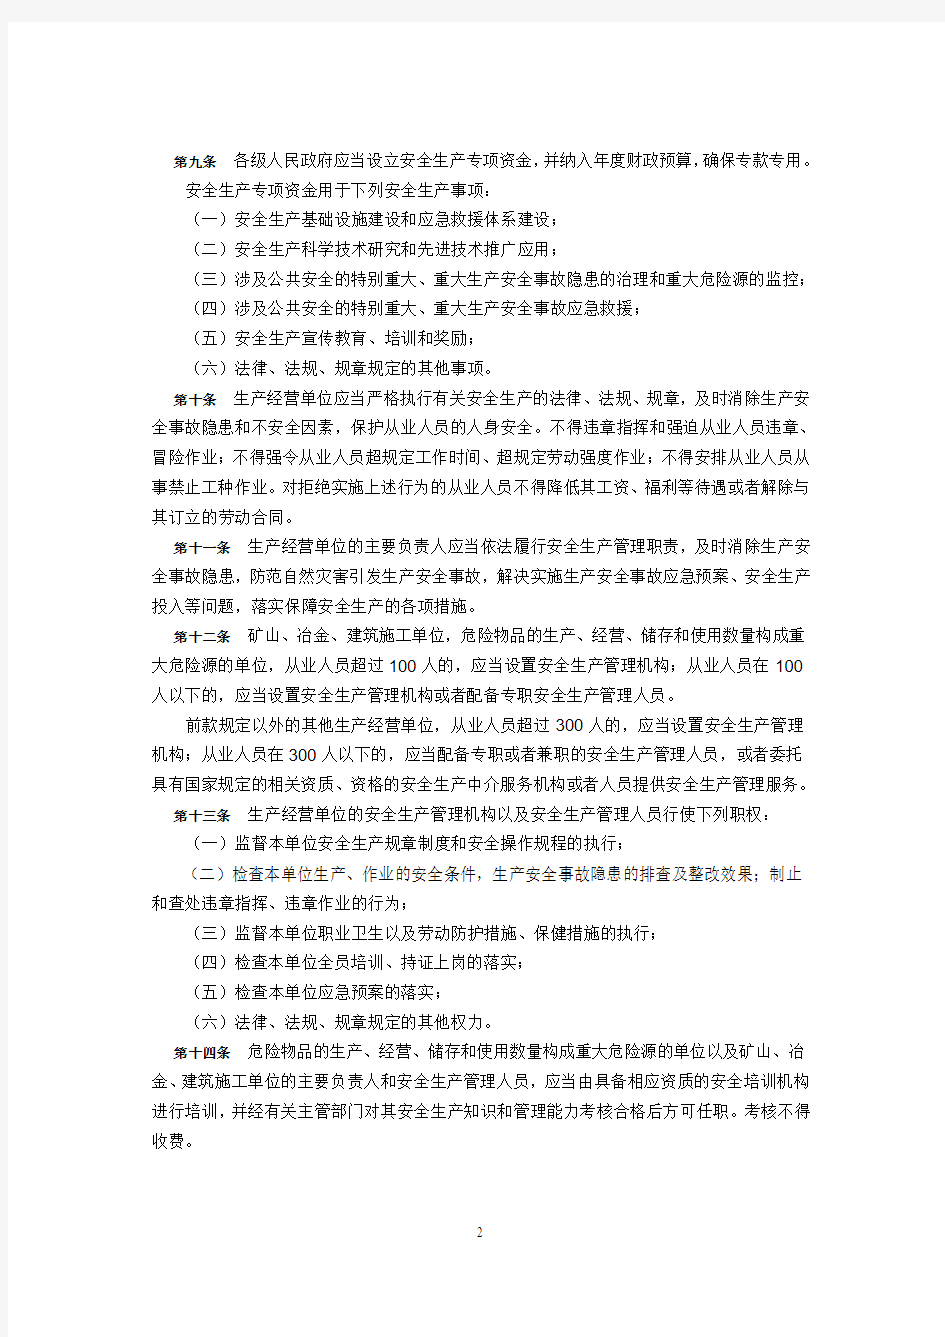 2007年12月1日实施61号《辽宁省安全生产条例》